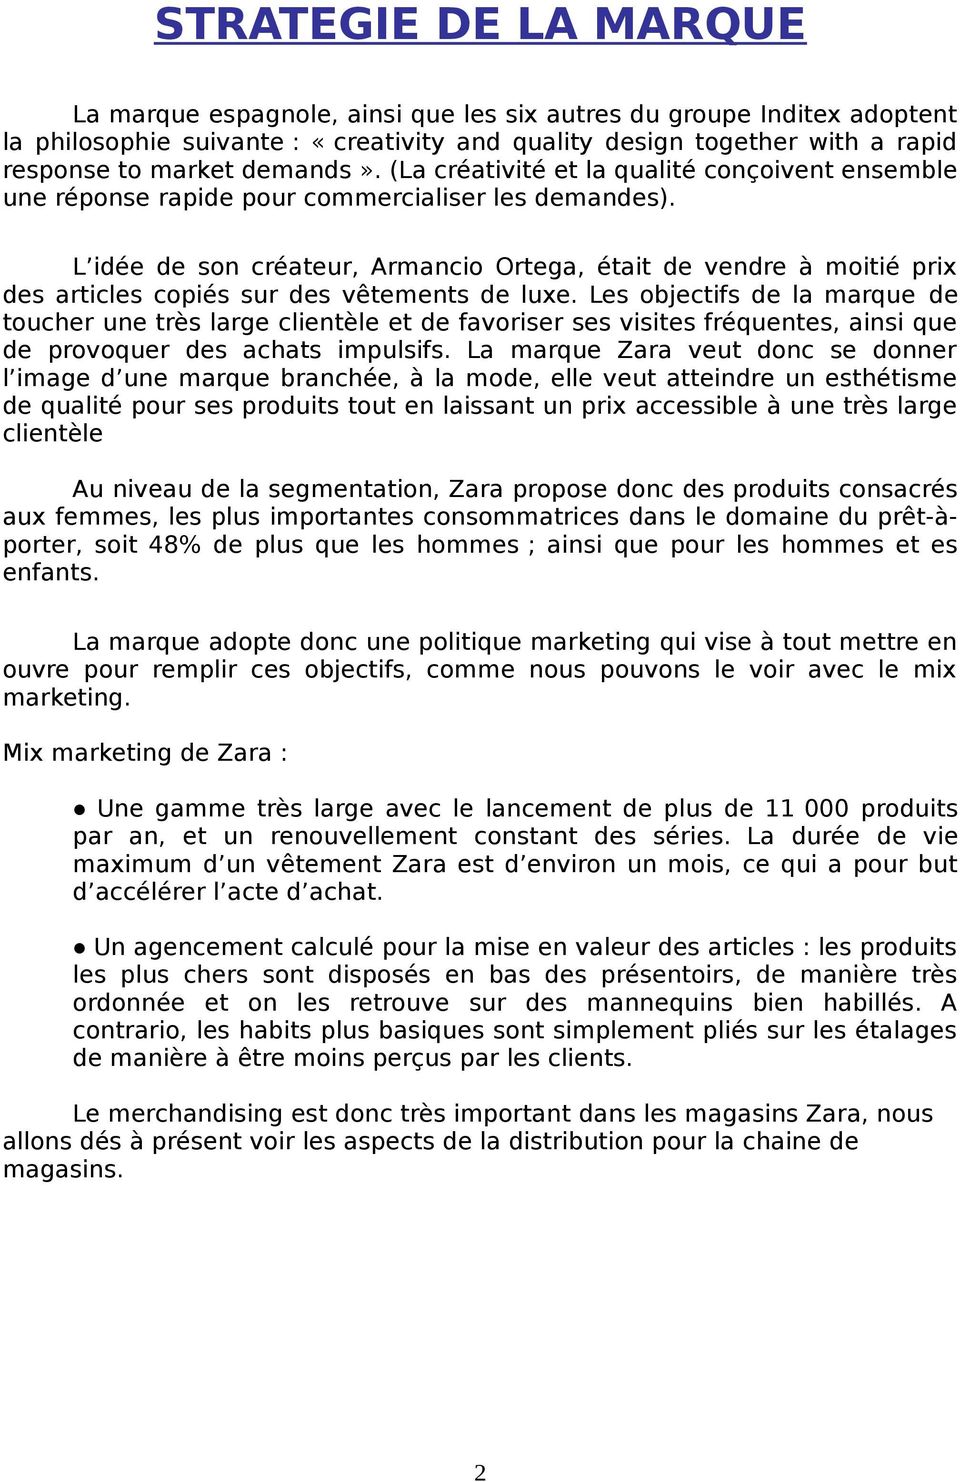 PRESENTATION DE L ENTREPRISE ZARA - PDF Téléchargement Gratuit